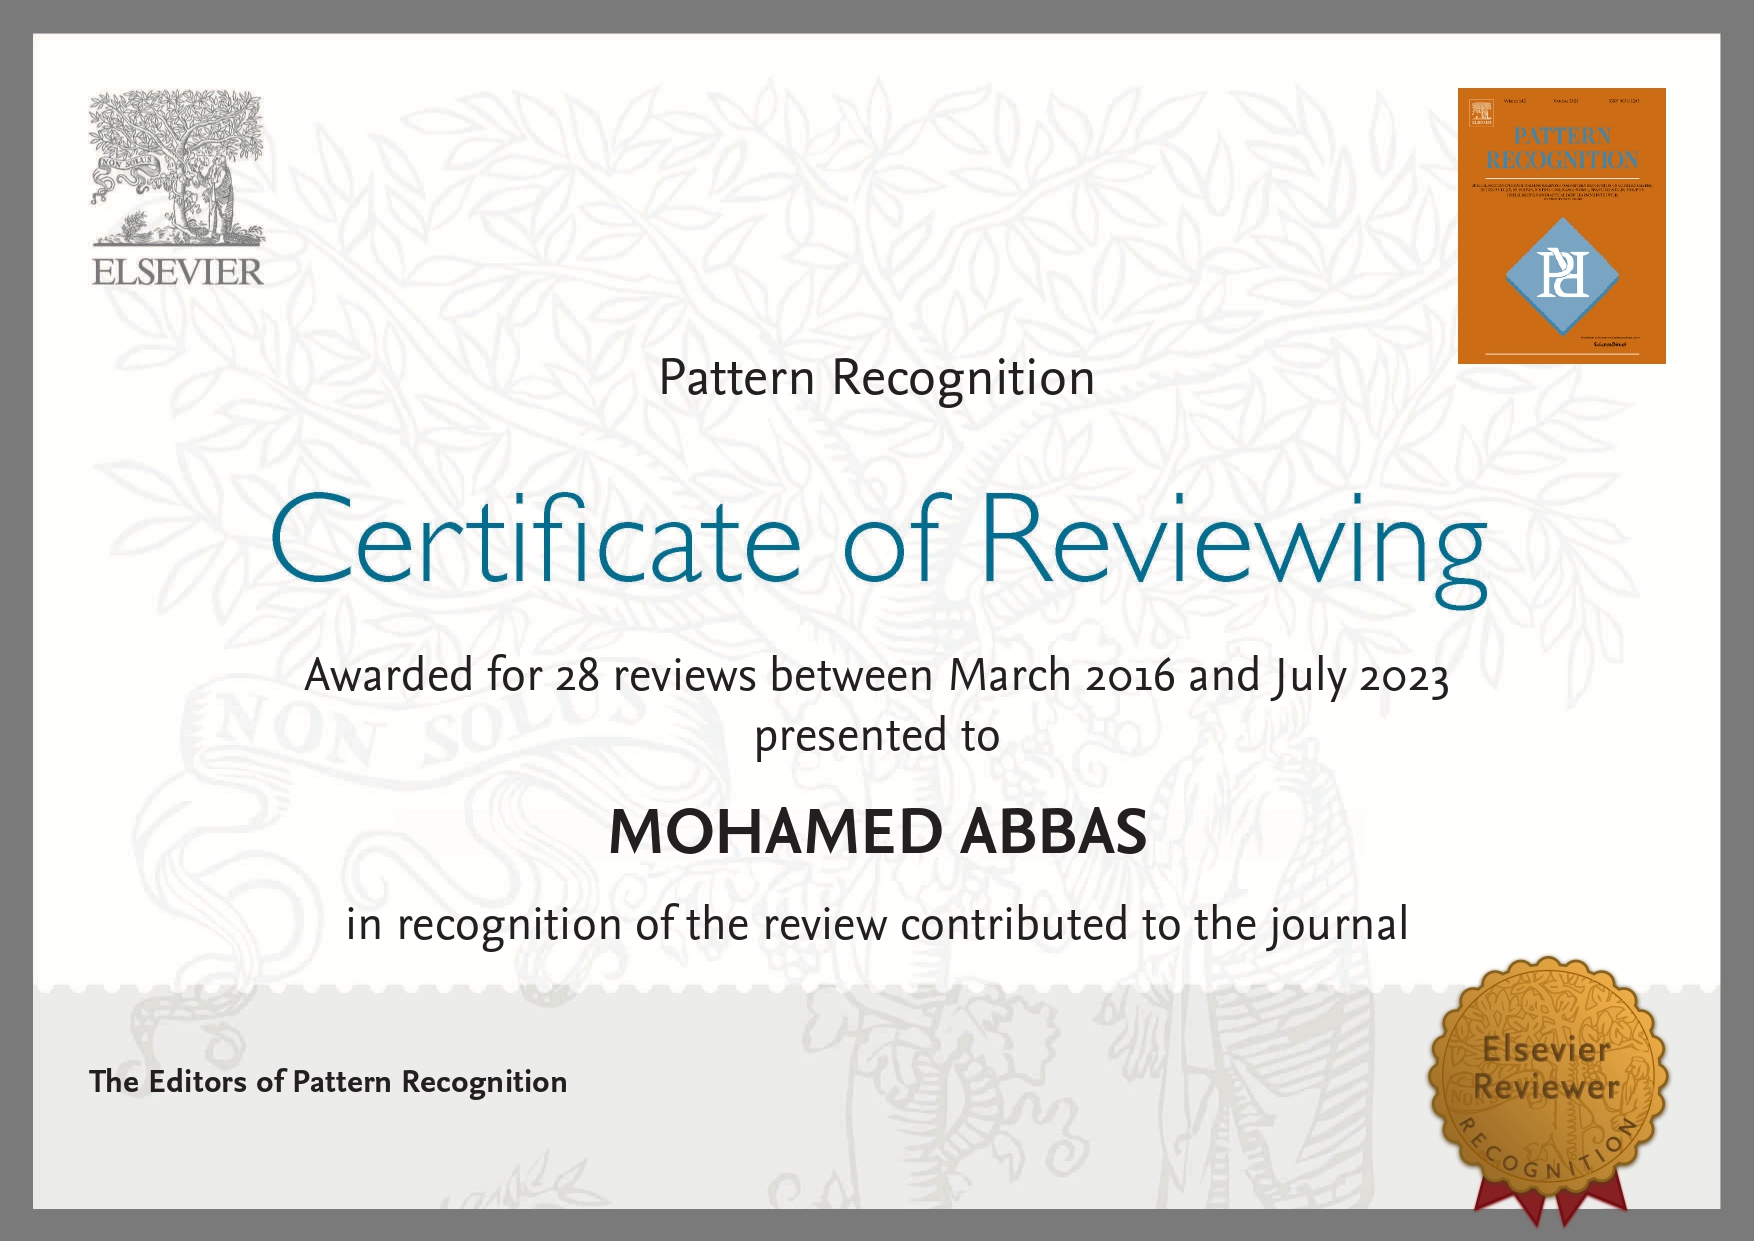 PR Reviewer